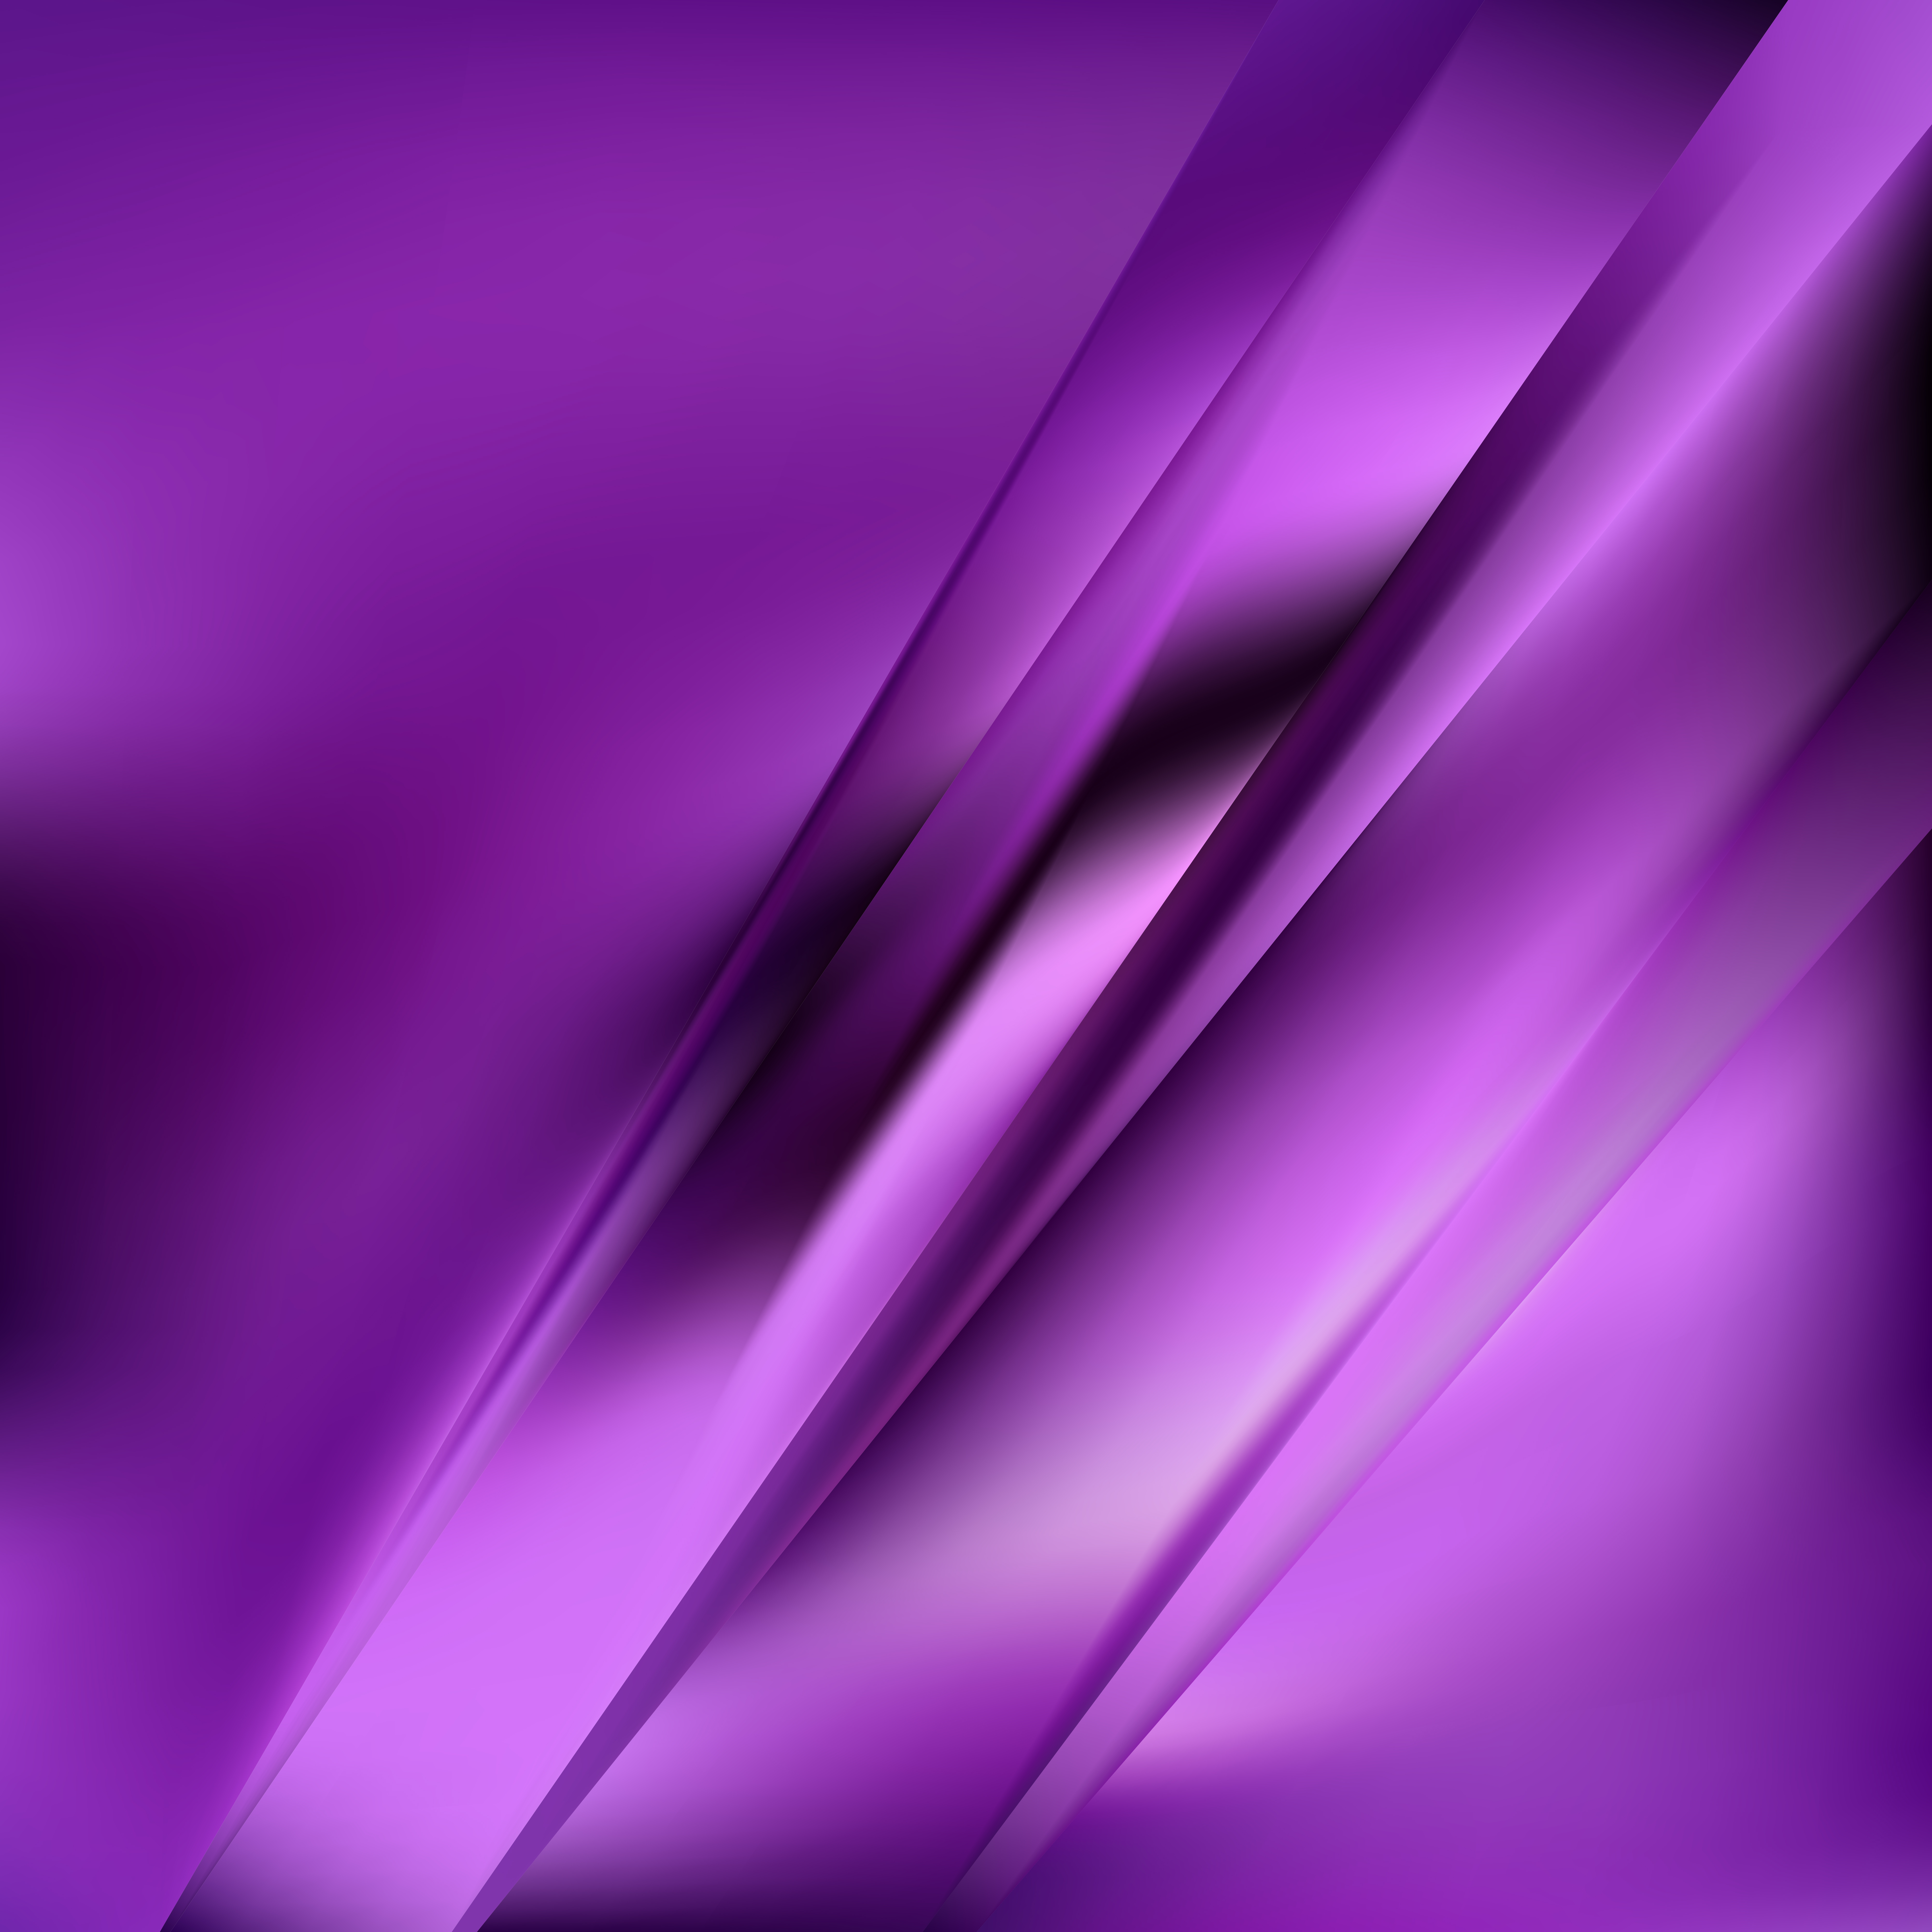 Free Dark Purple Background Graphic